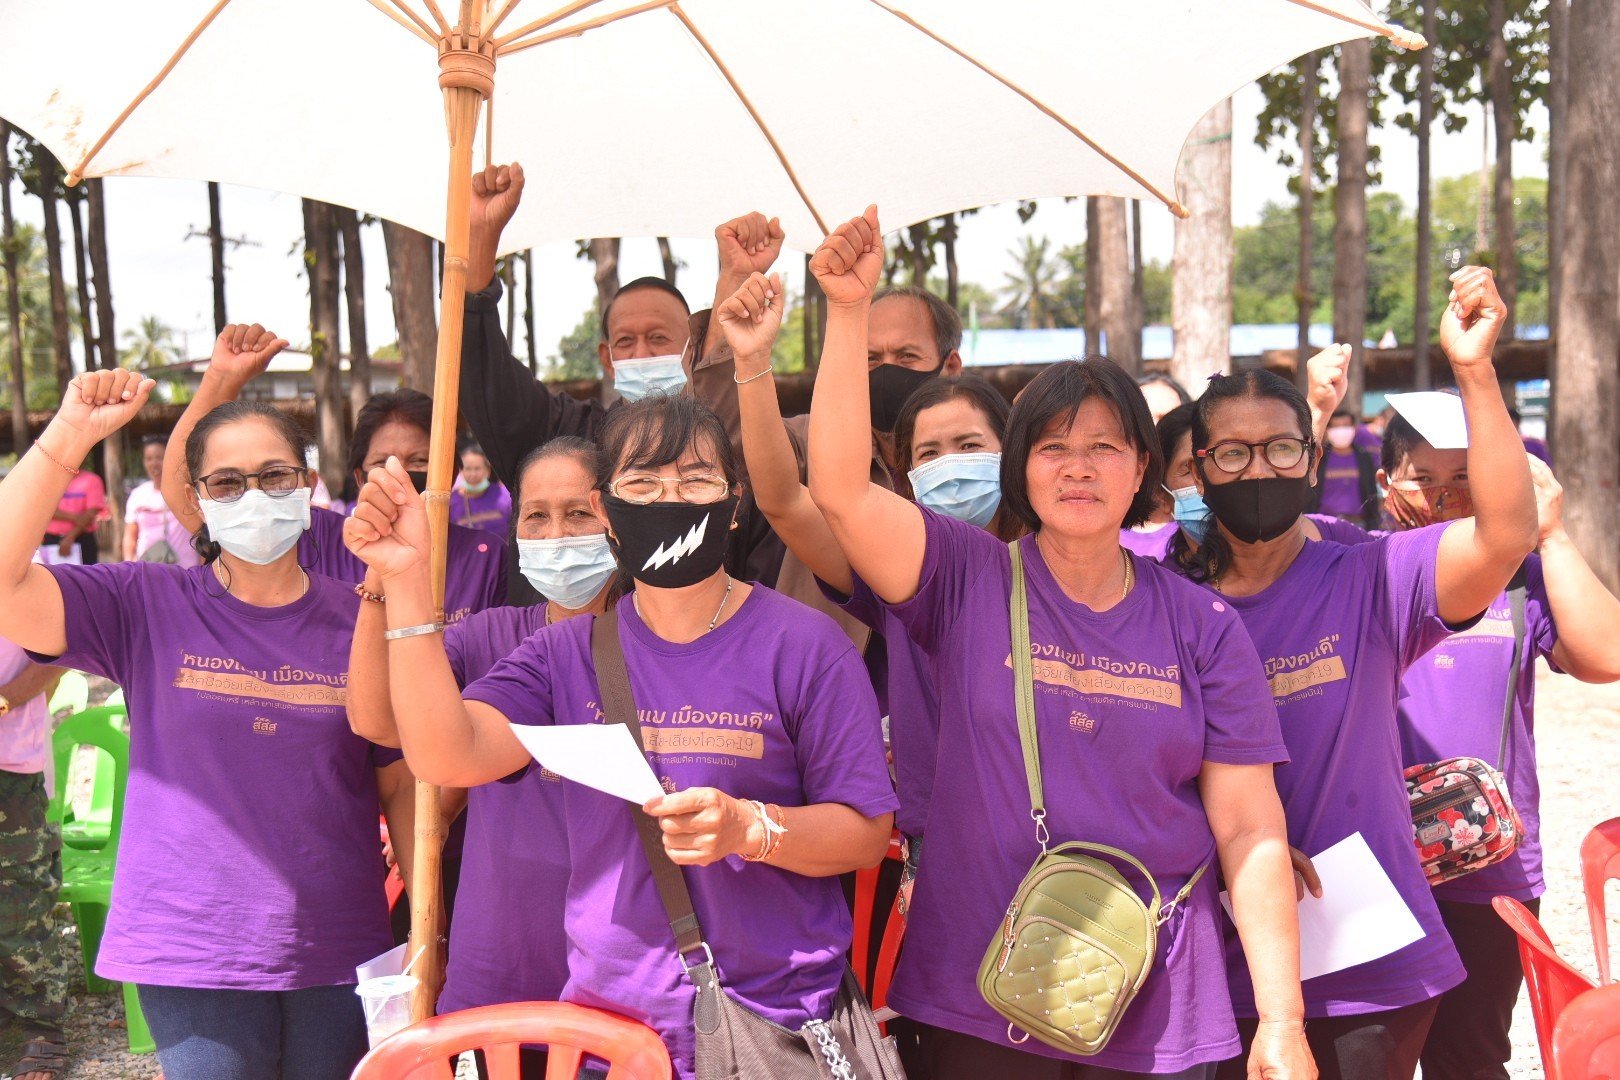 ชุมชนร่วมใจ ห่างไกลปัจจัยเสี่ยง thaihealth